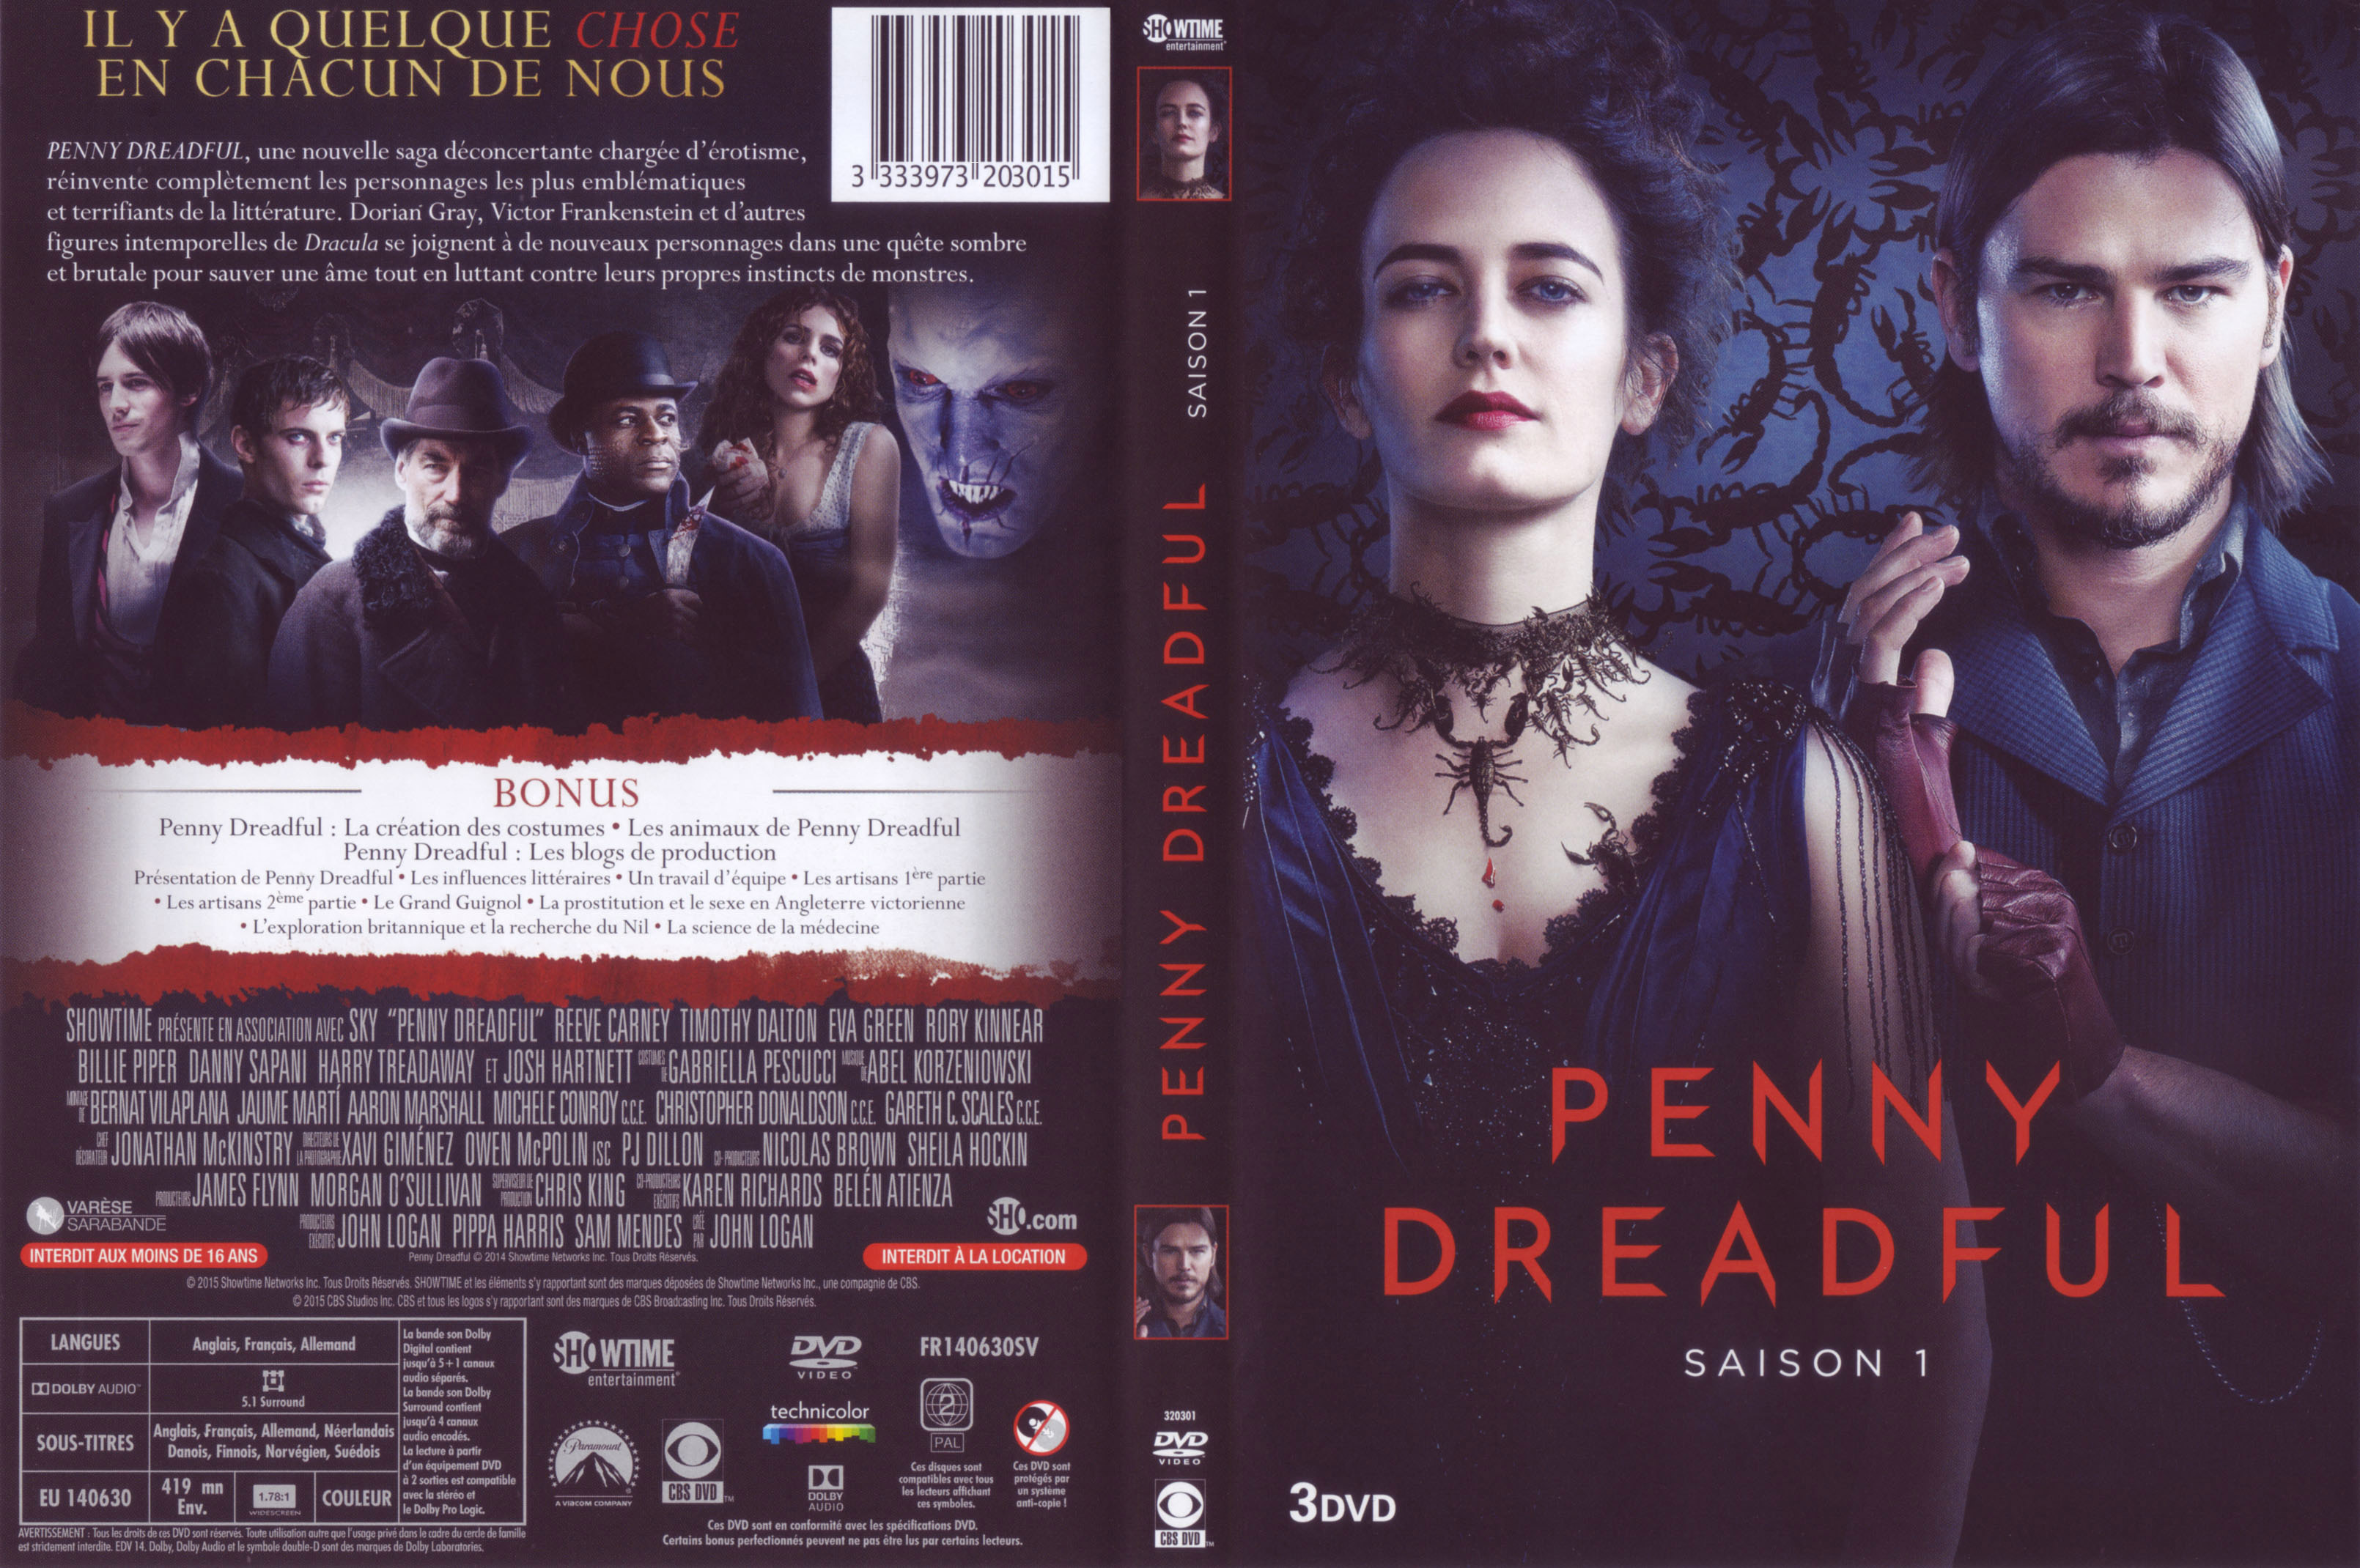 Jaquette DVD Penny dreadful Saison 1